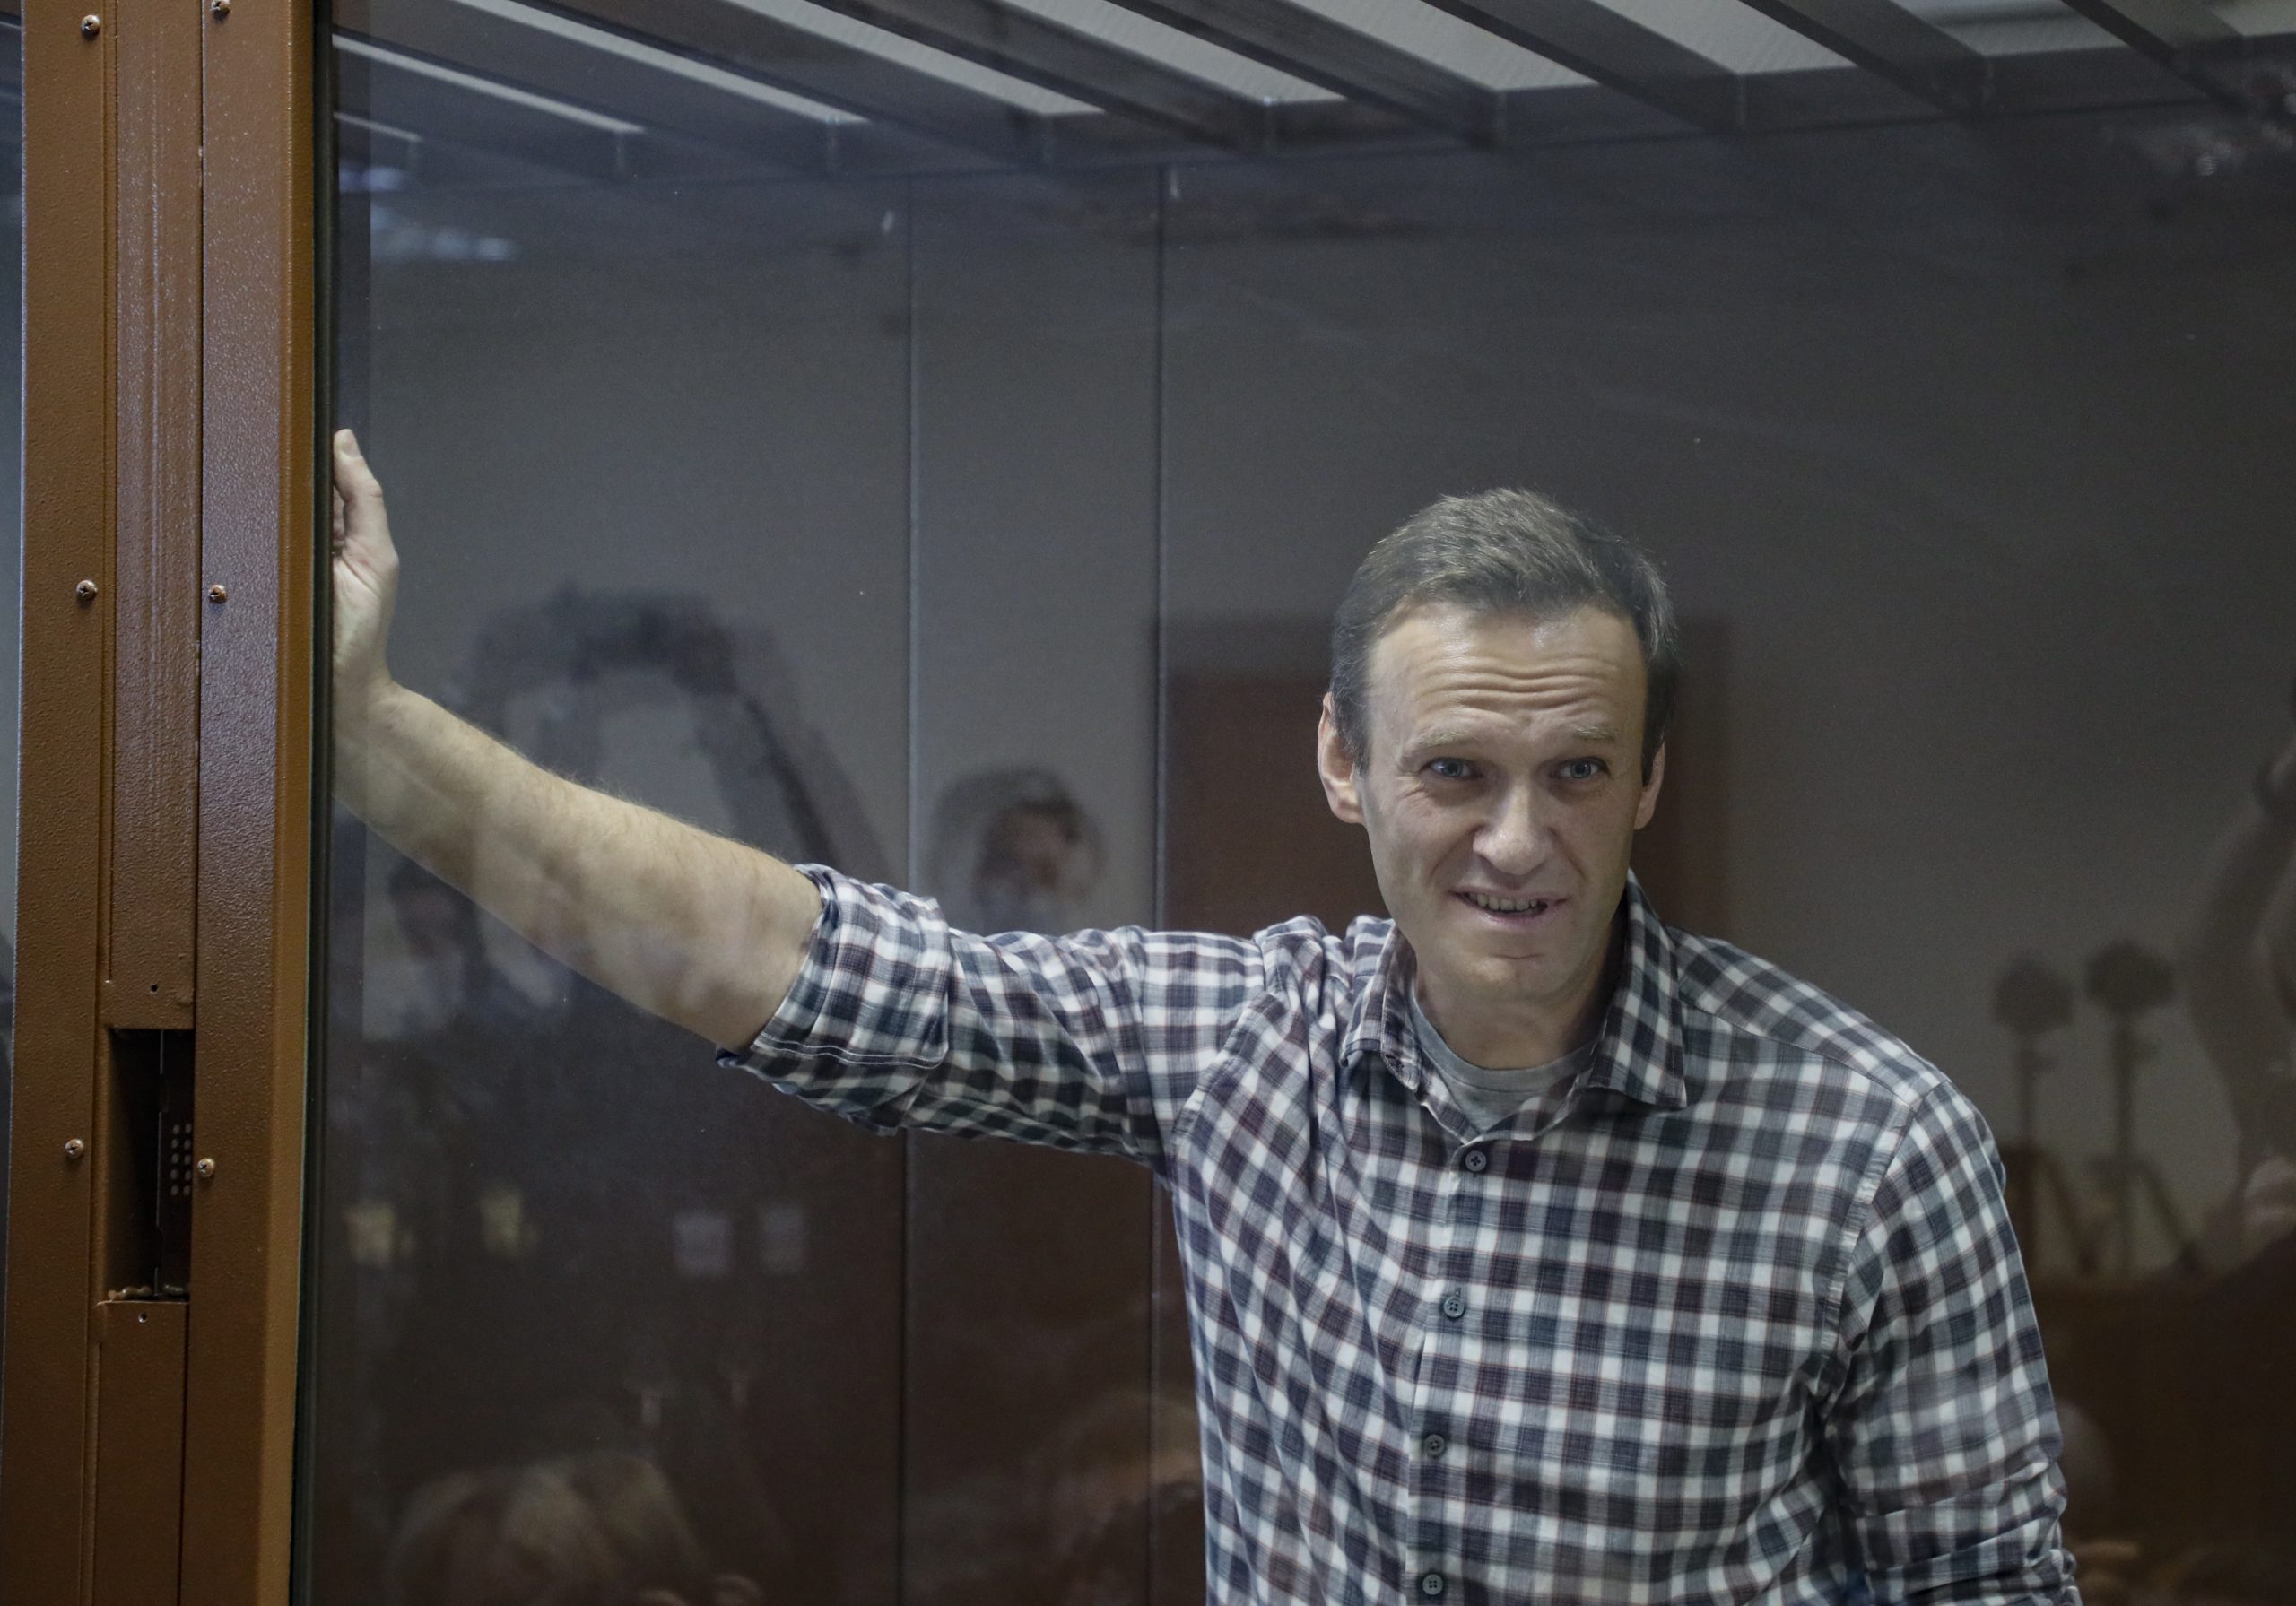 Navaljnji najavio štrajk glađu, uprava zatvora demantovala da mu je uskraćena medicinska pomoć 1